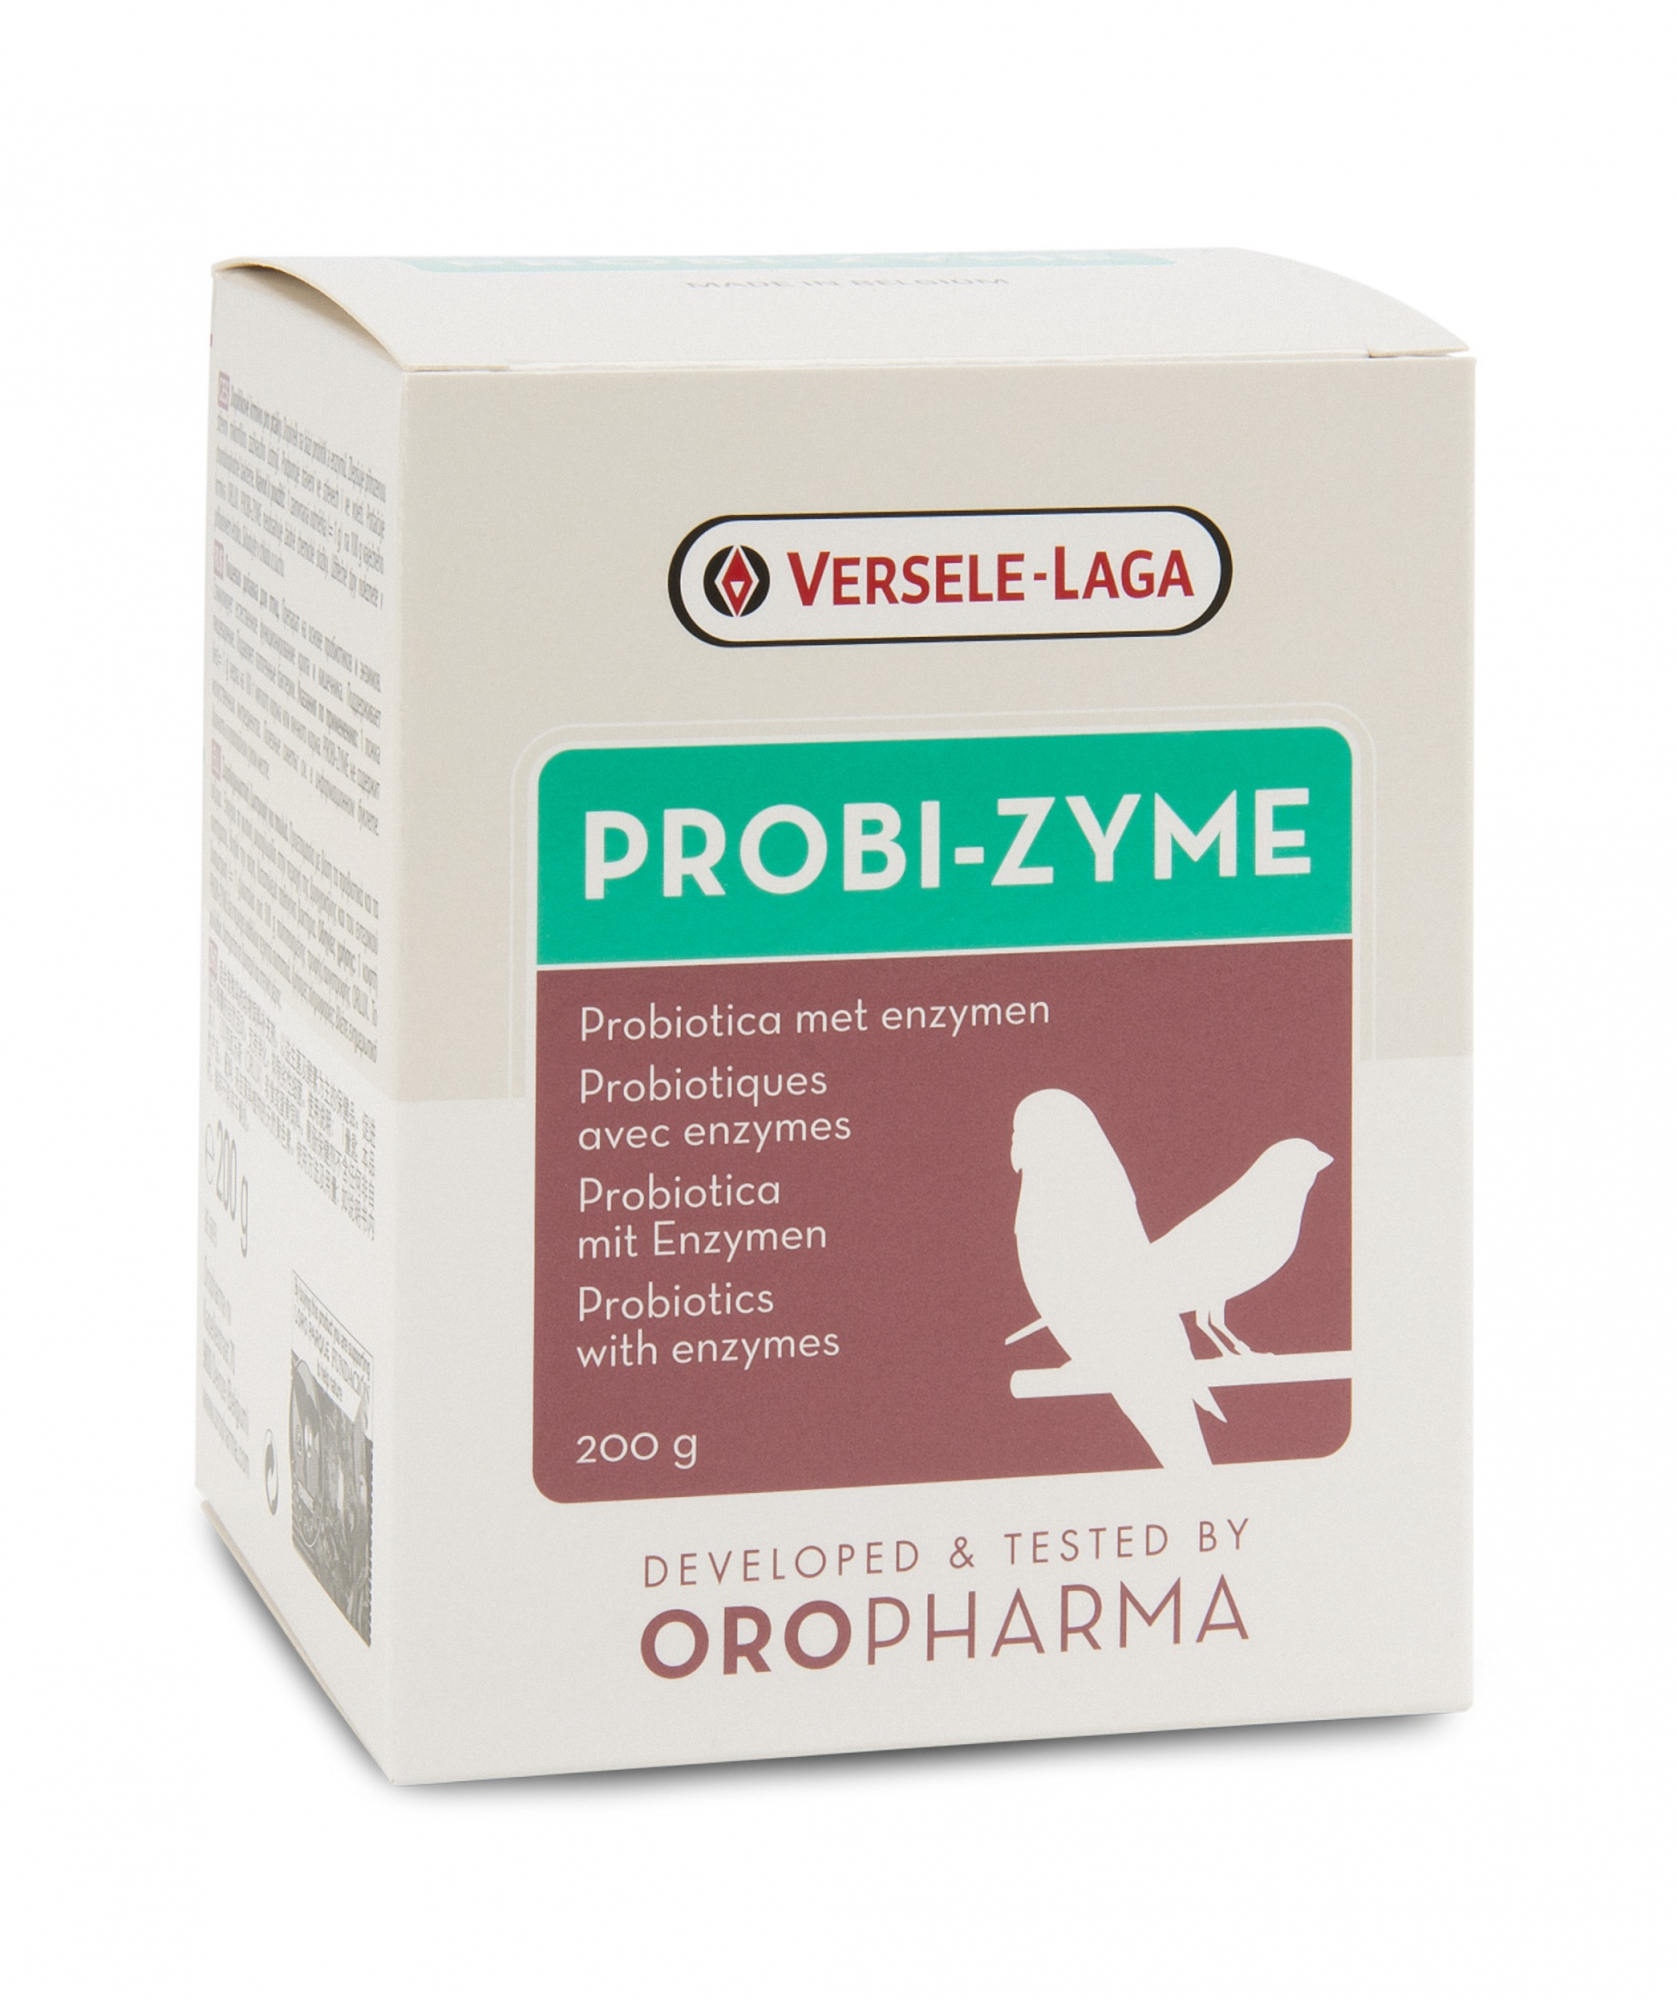 Oropharma Probi-Zyme complemento alimentare che attiva la flora del gozzo e dell'intestino